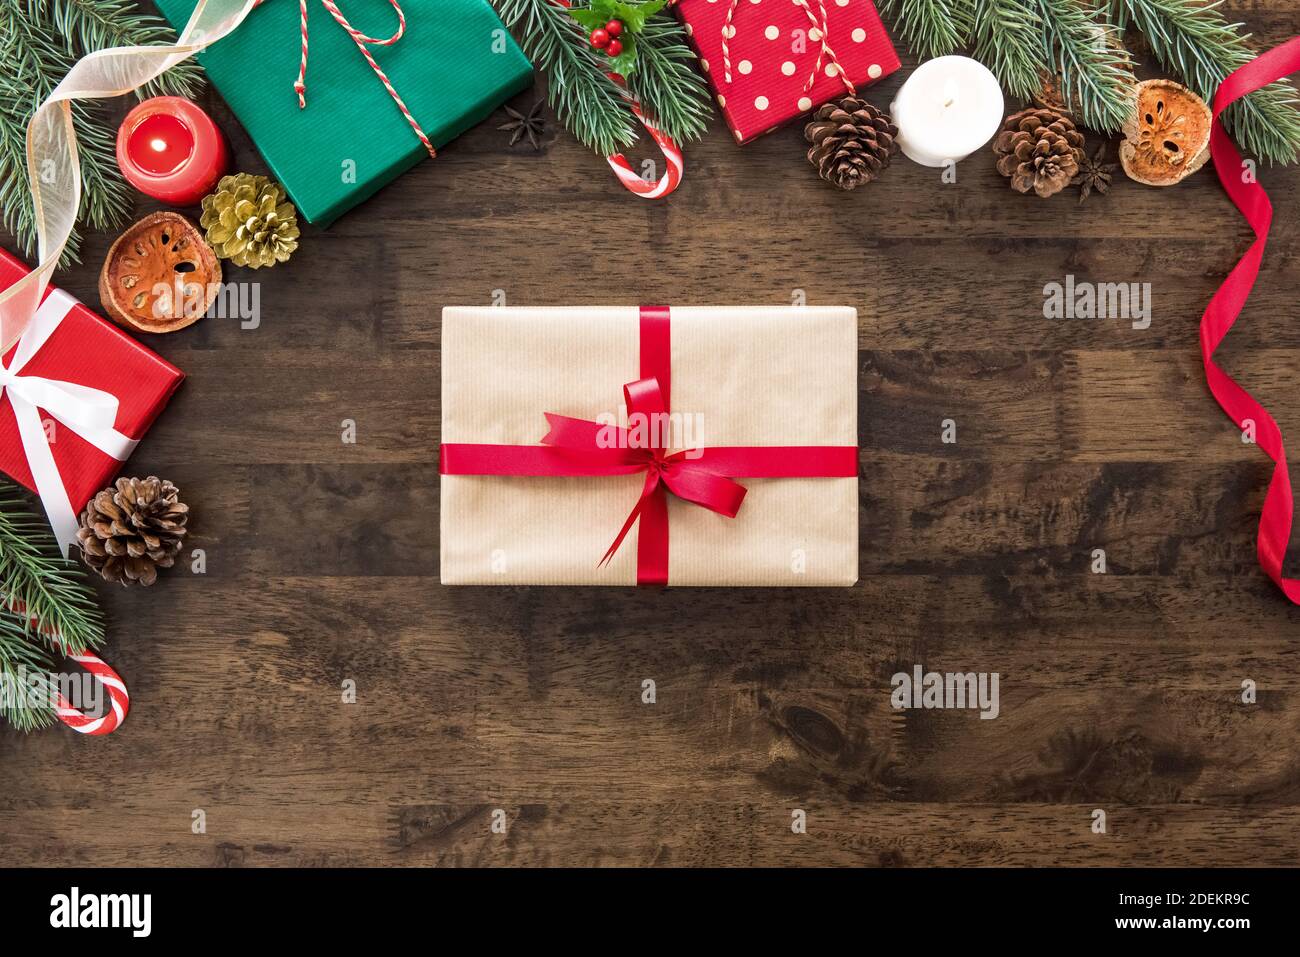 Regalo di Natale su tavola di legno con coloratissimi oggetti decorativi e scatole al confine, preparato per una persona speciale durante le festività natalizie Foto Stock